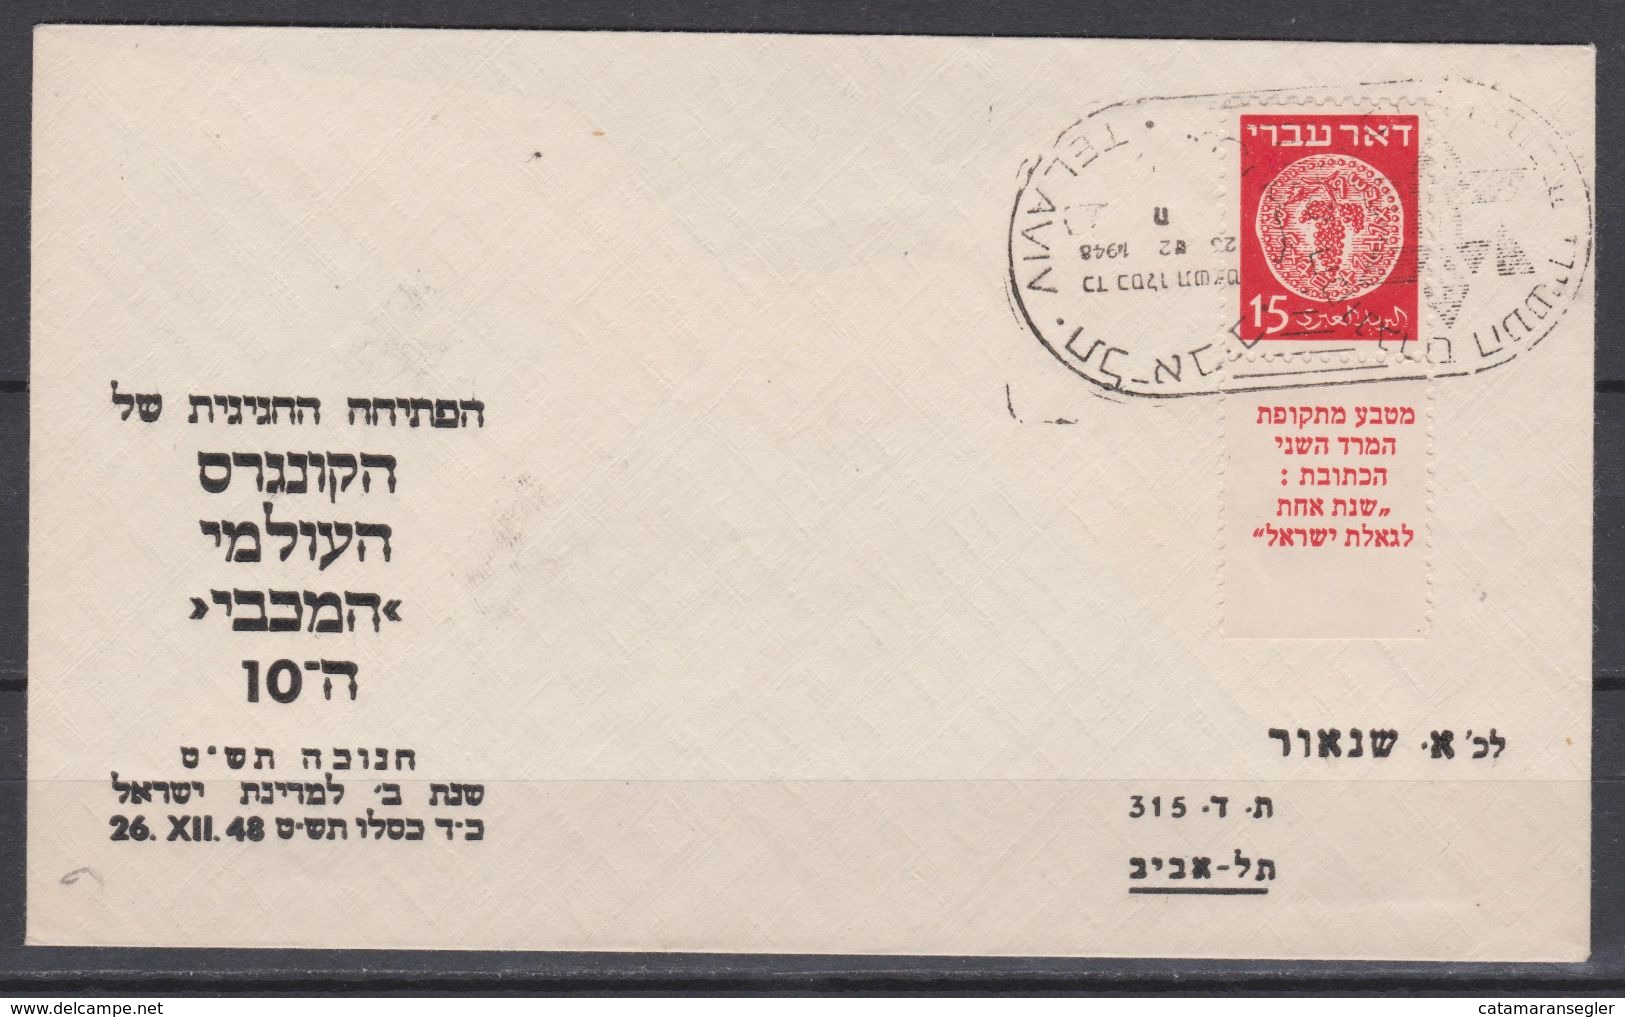 Israel 1948 Ganzsache  Nr. 4  Falscher Tab -  5 Anstatt 4 Linien - Auf Brief. - Oblitérés (avec Tabs)